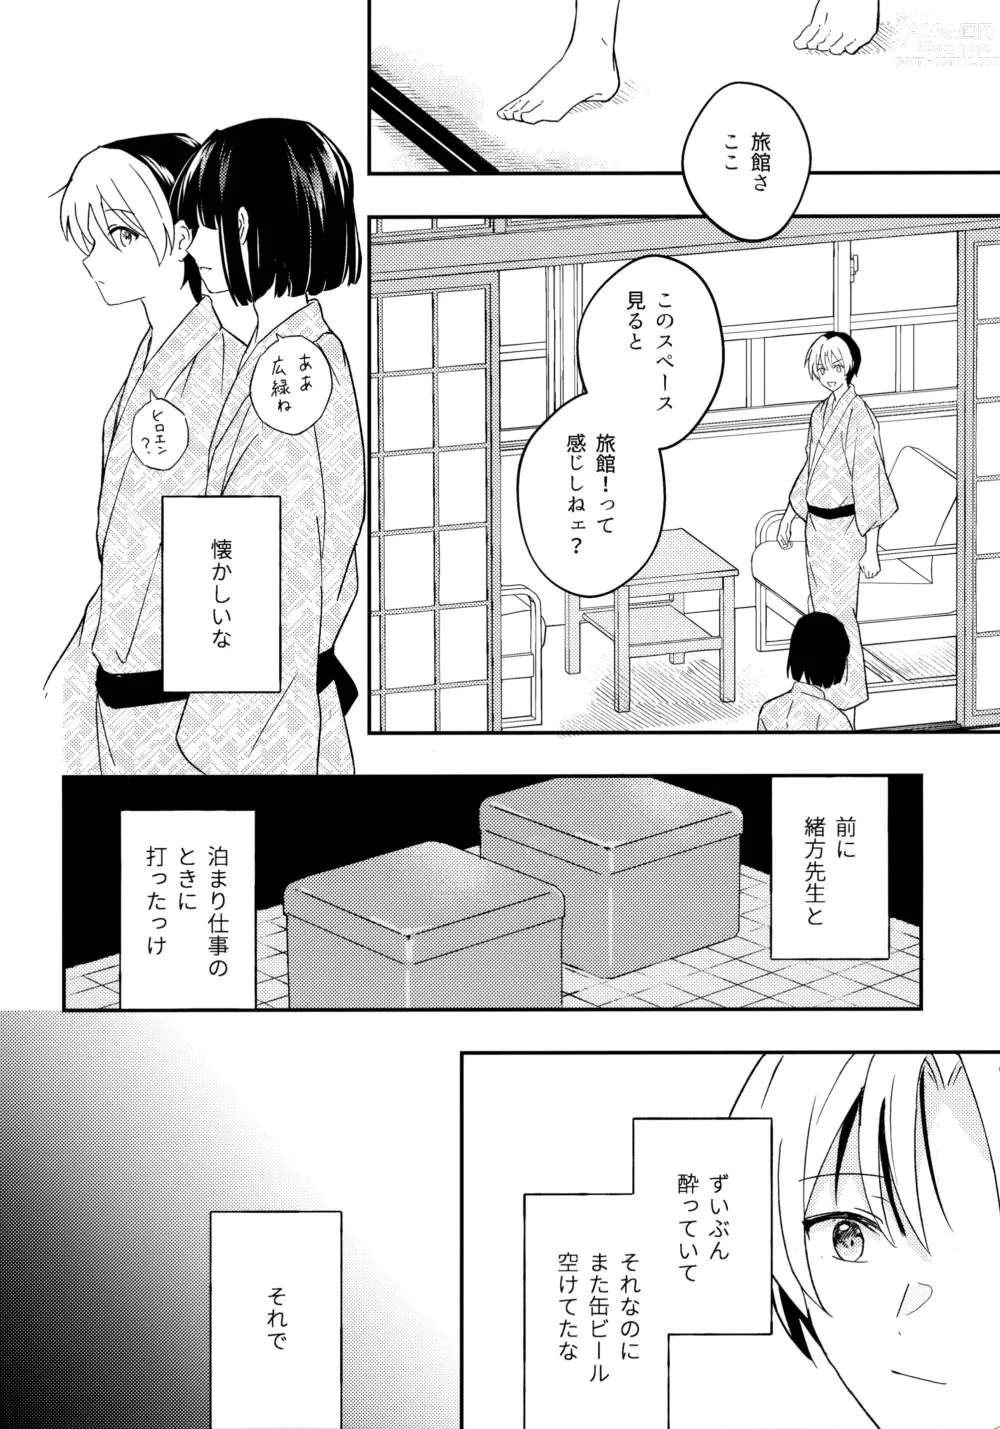 Page 9 of doujinshi Samenai Netsu wa yoi no Iro